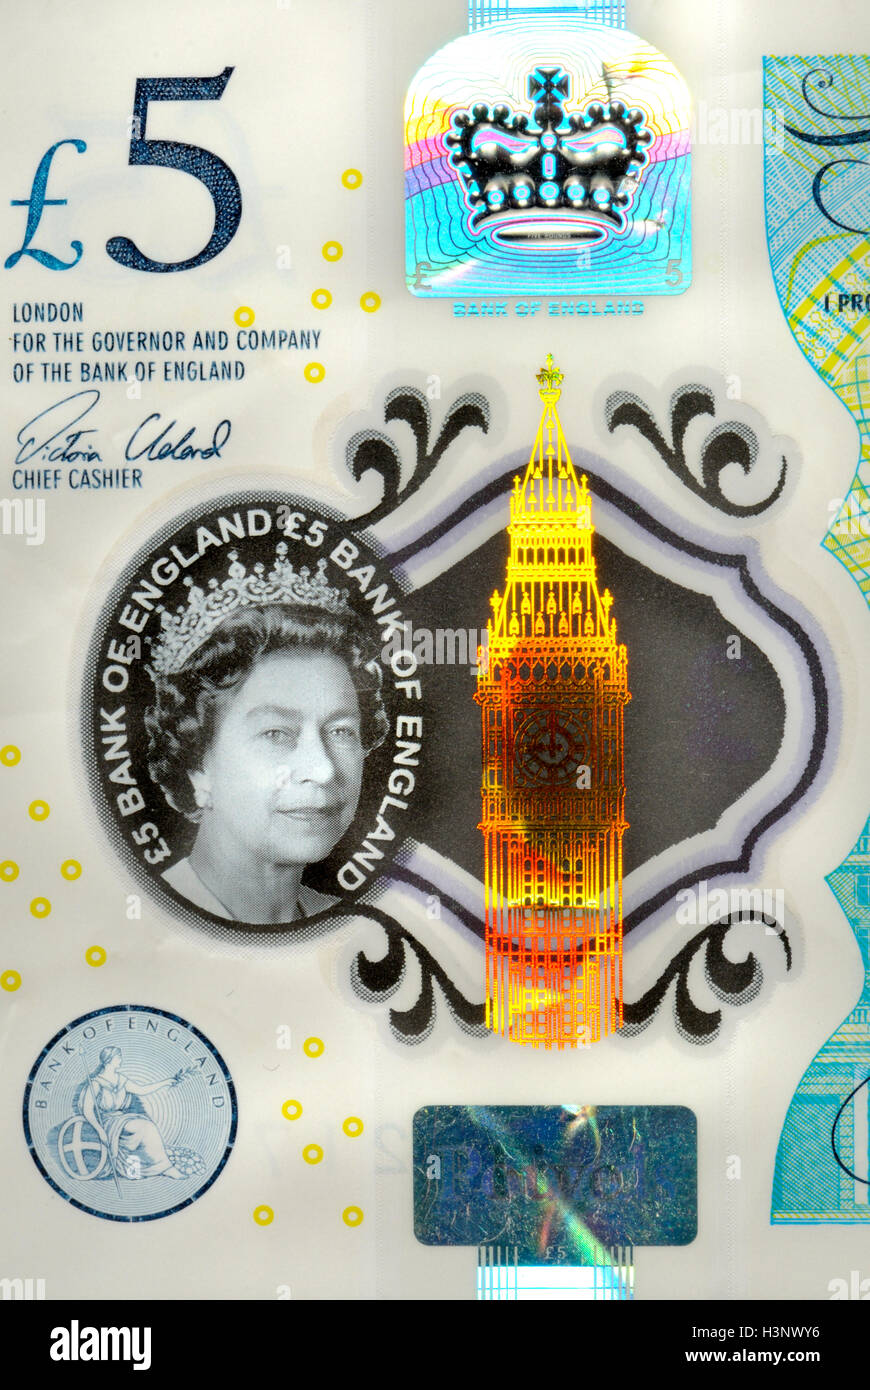 Nouveau (2016) British plastic €5 note indiquant les éléments de sécurité : 'transparente' ; Big Ben holgram ; 'constellation Eurion' - Banque D'Images